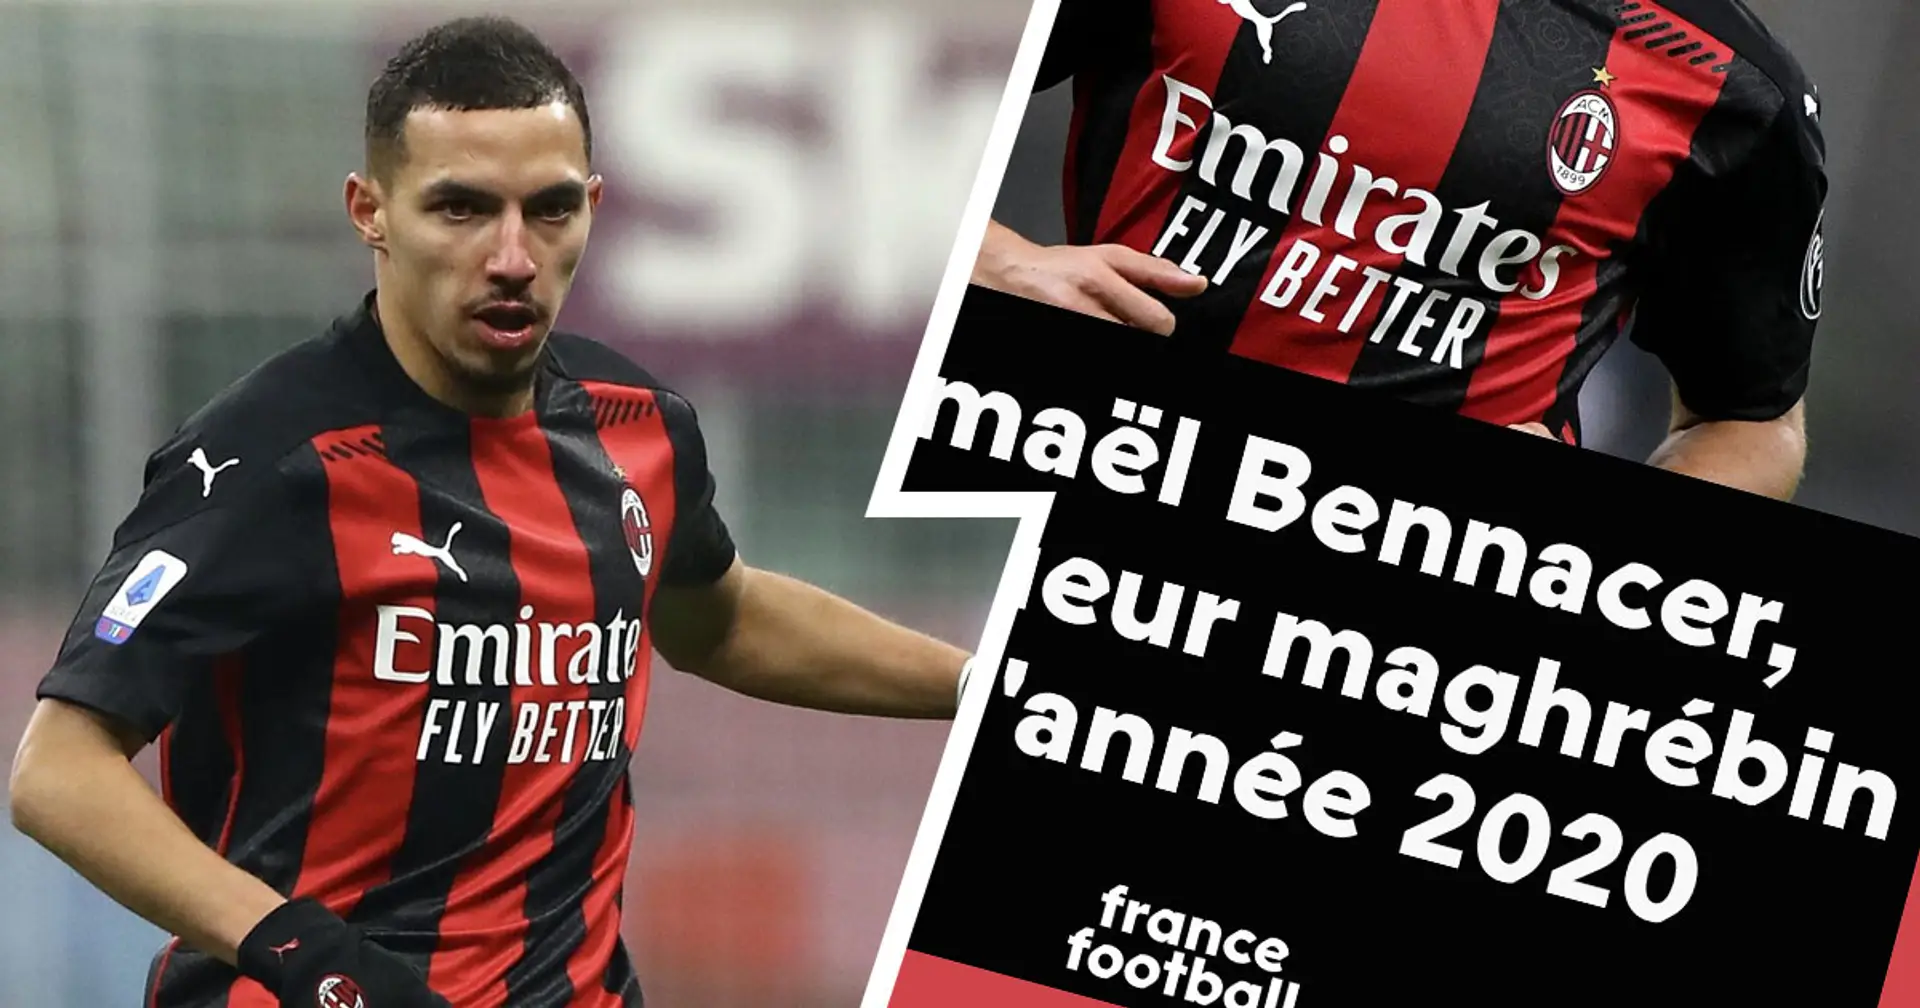 Bennacer eletto miglior giocatore nordafricano del 2020: l'algerino arriva davanti a 2 top player